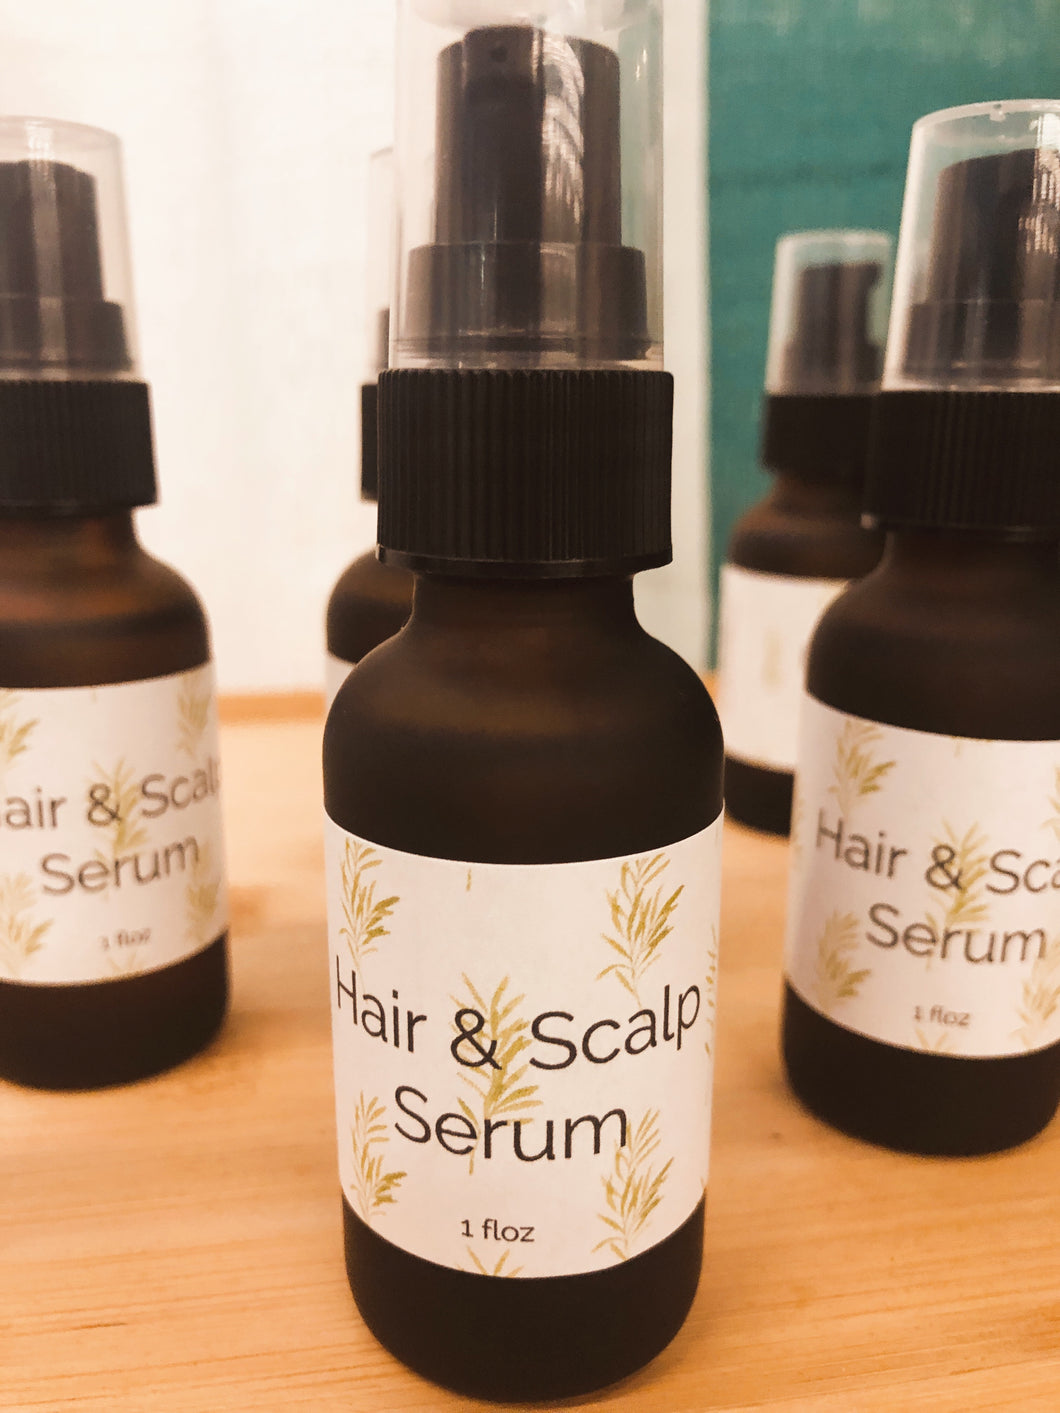 Hair & Scalp Serum